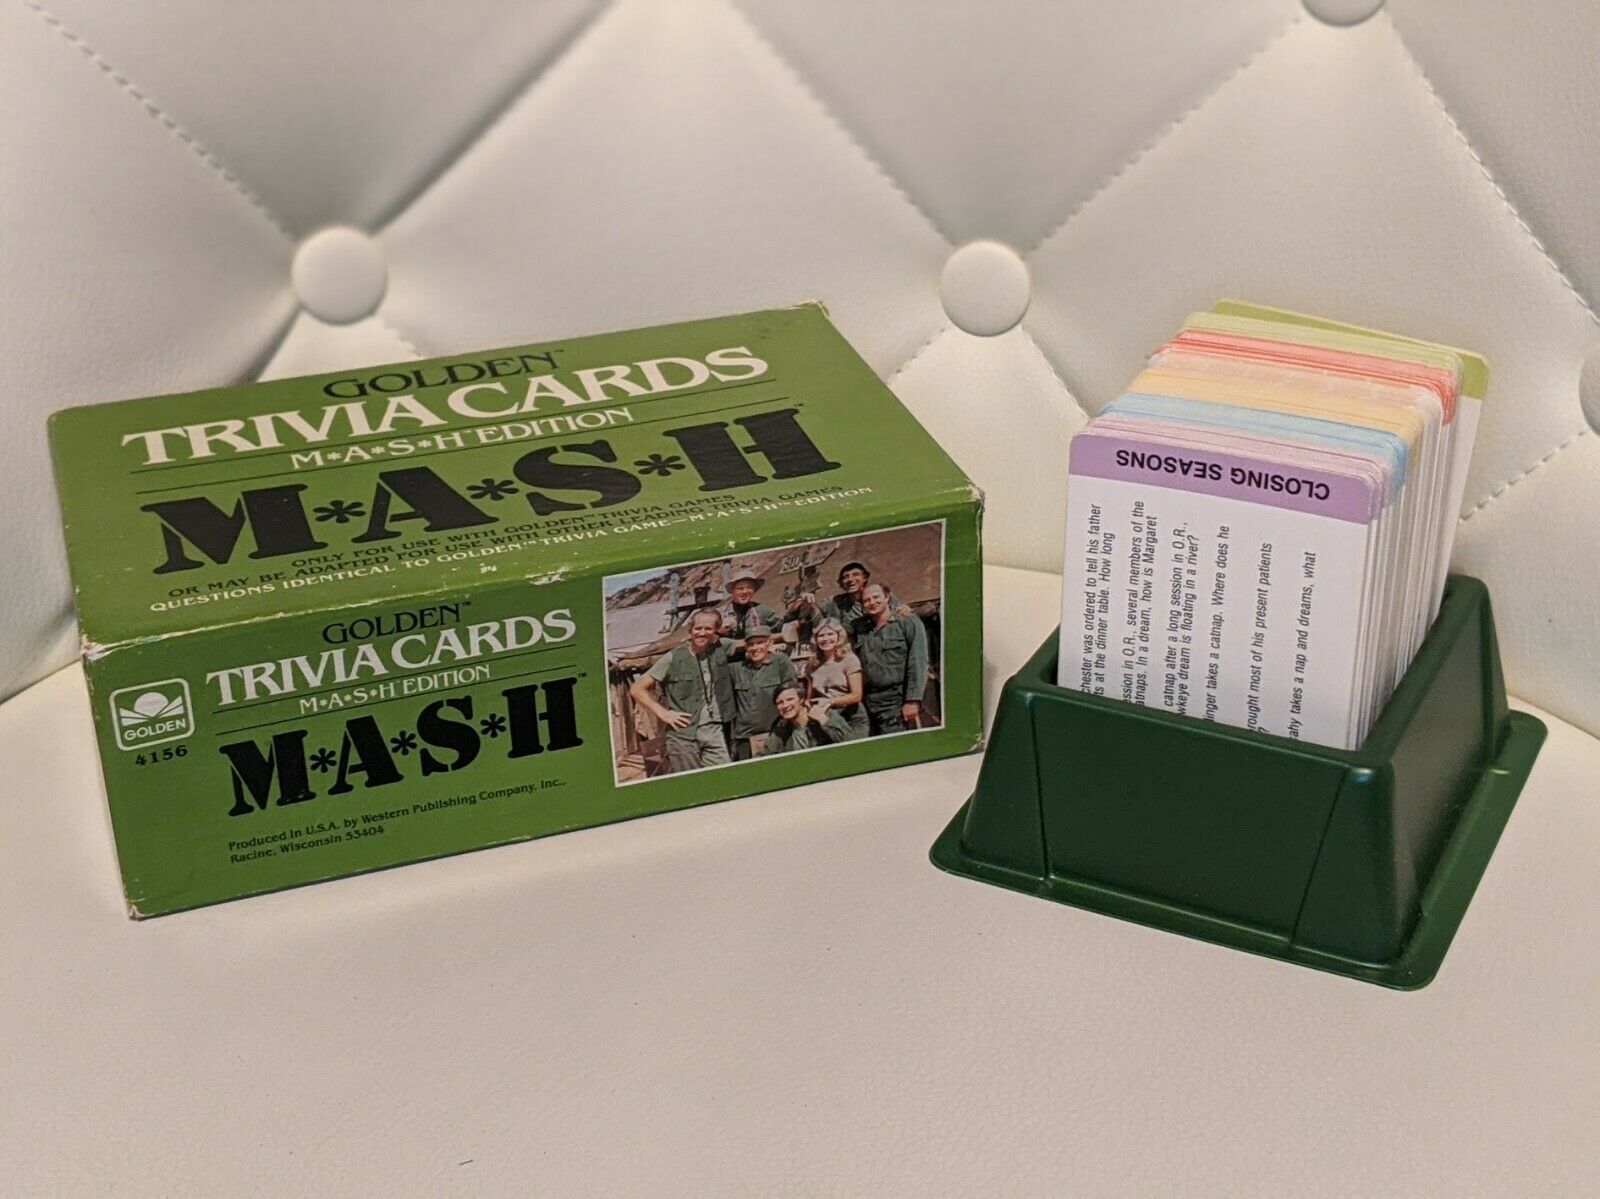 M*A*S*H* Golden Trivia Cards Mash Edition Game 1984 MASH Card Game Vintage - $12.50